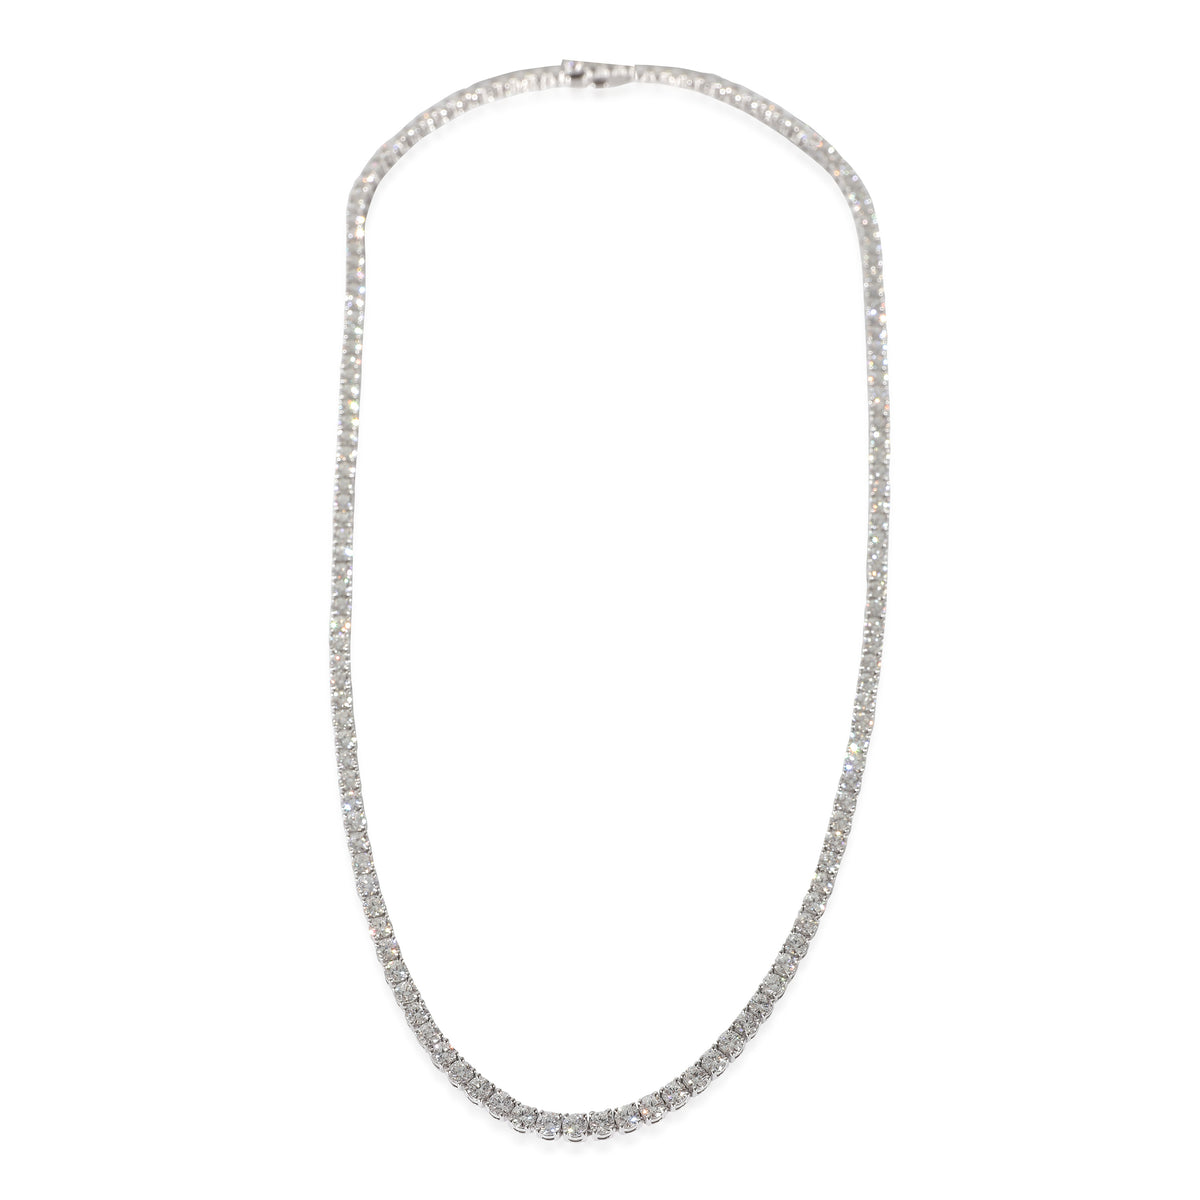 Mémoire Uniform Line Necklace in 18k White Gold 10.27 CTW